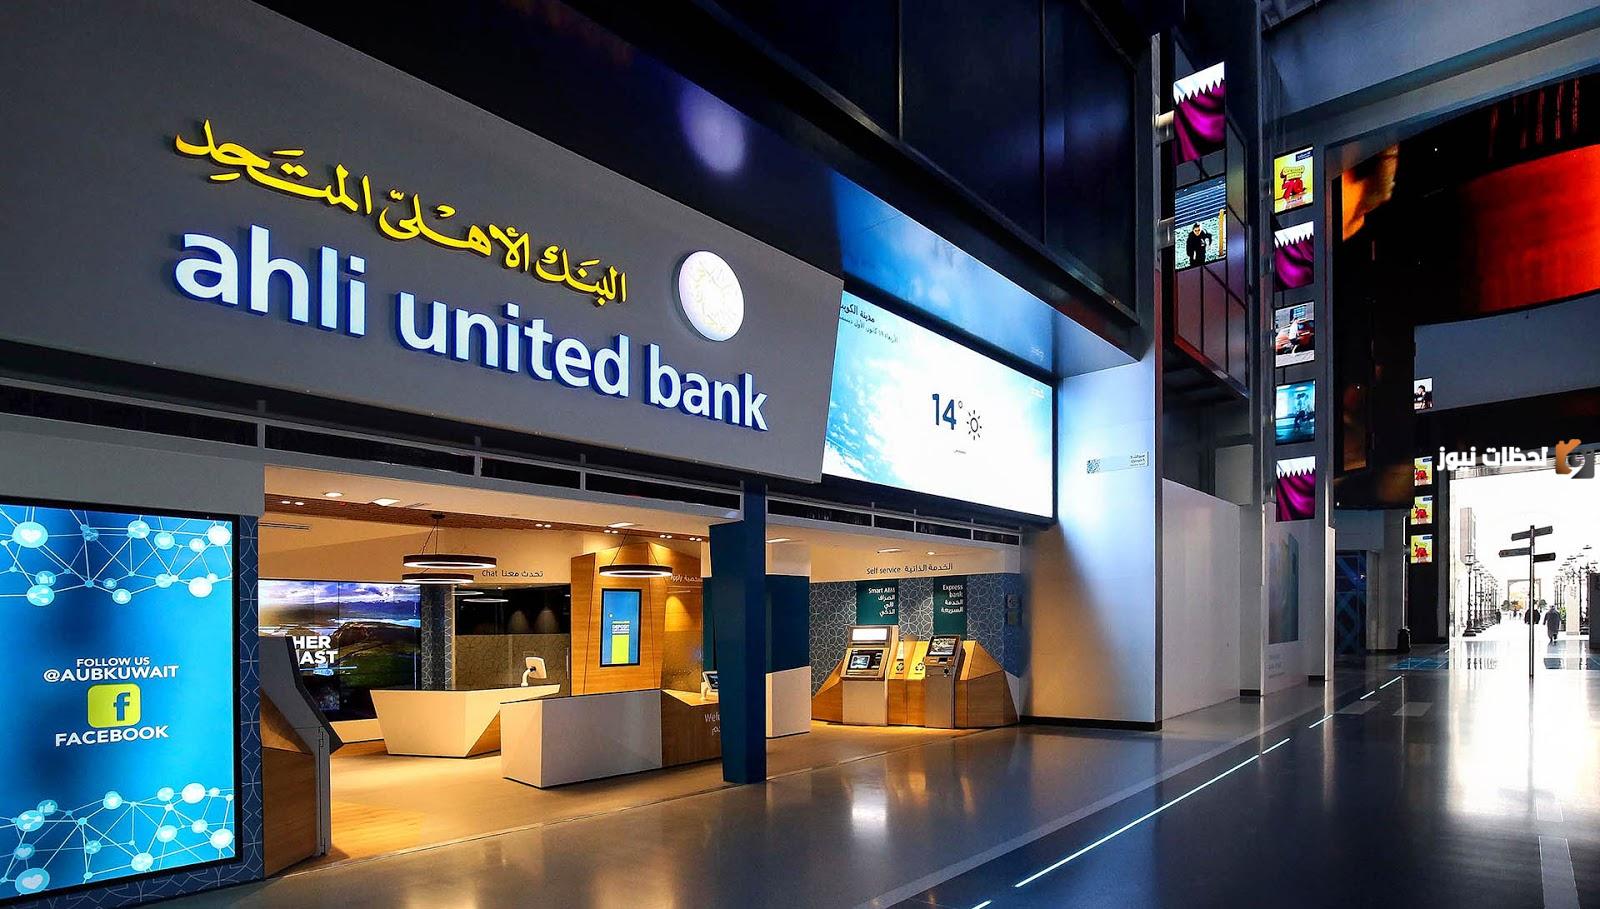 الأهلي المتحد – مصر يحول عملياته المصرفية إلى بنك متوافق مع مبادي الشريعة الإسلامية